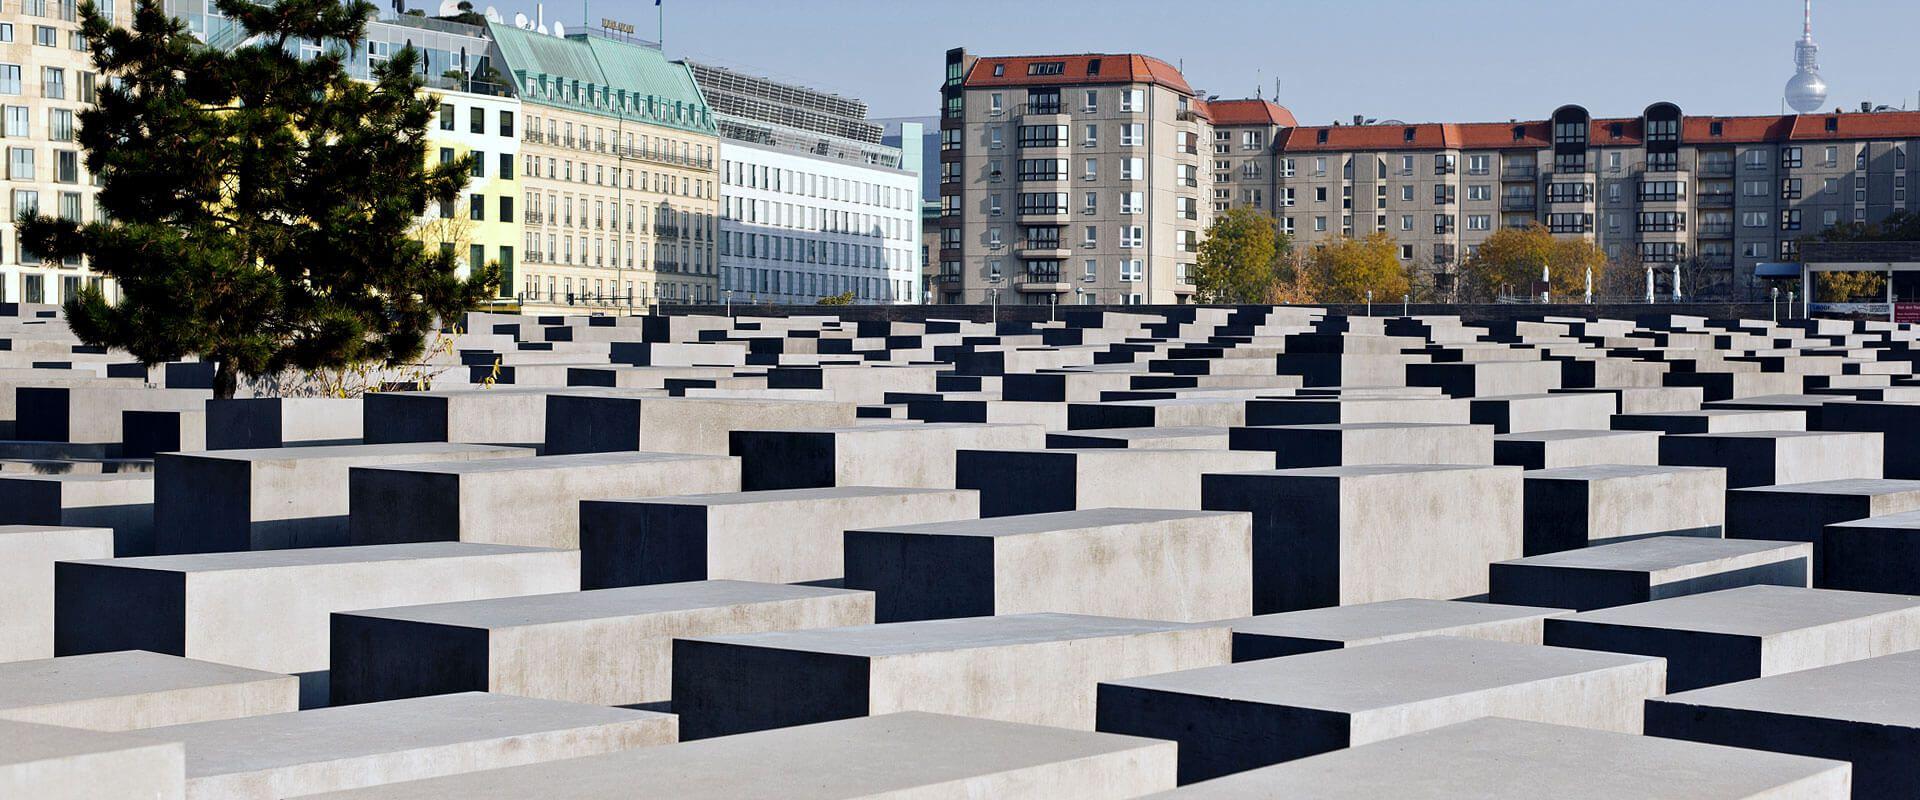 Фото Мемориал памяти убитых евреев Европы в Берлине